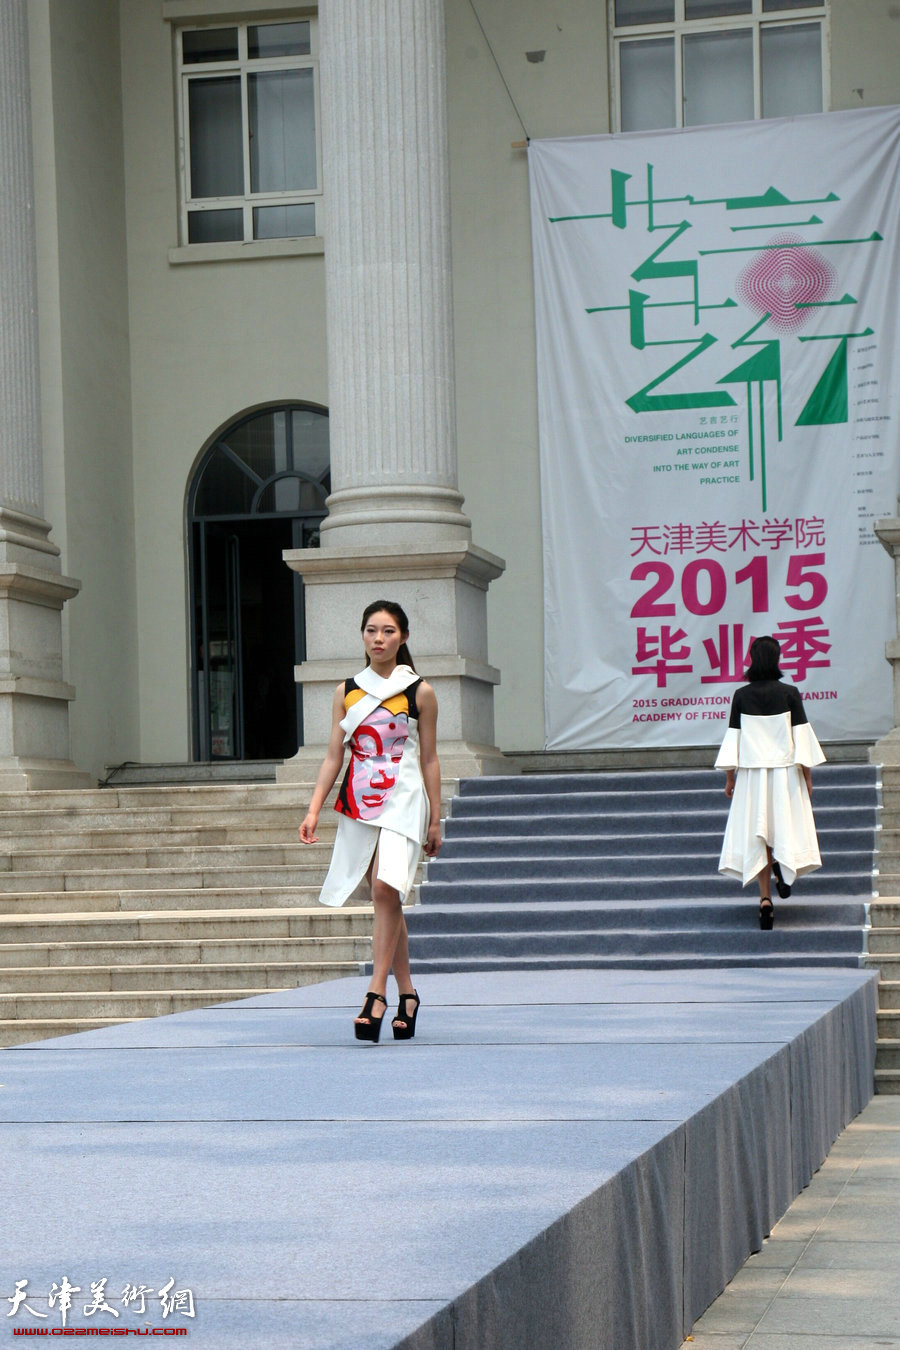 “创造与未来”——天津美术学院2015届毕业生优秀作品展在天津美术学院美术馆开幕，图为产品设计学院毕业生时装表演。